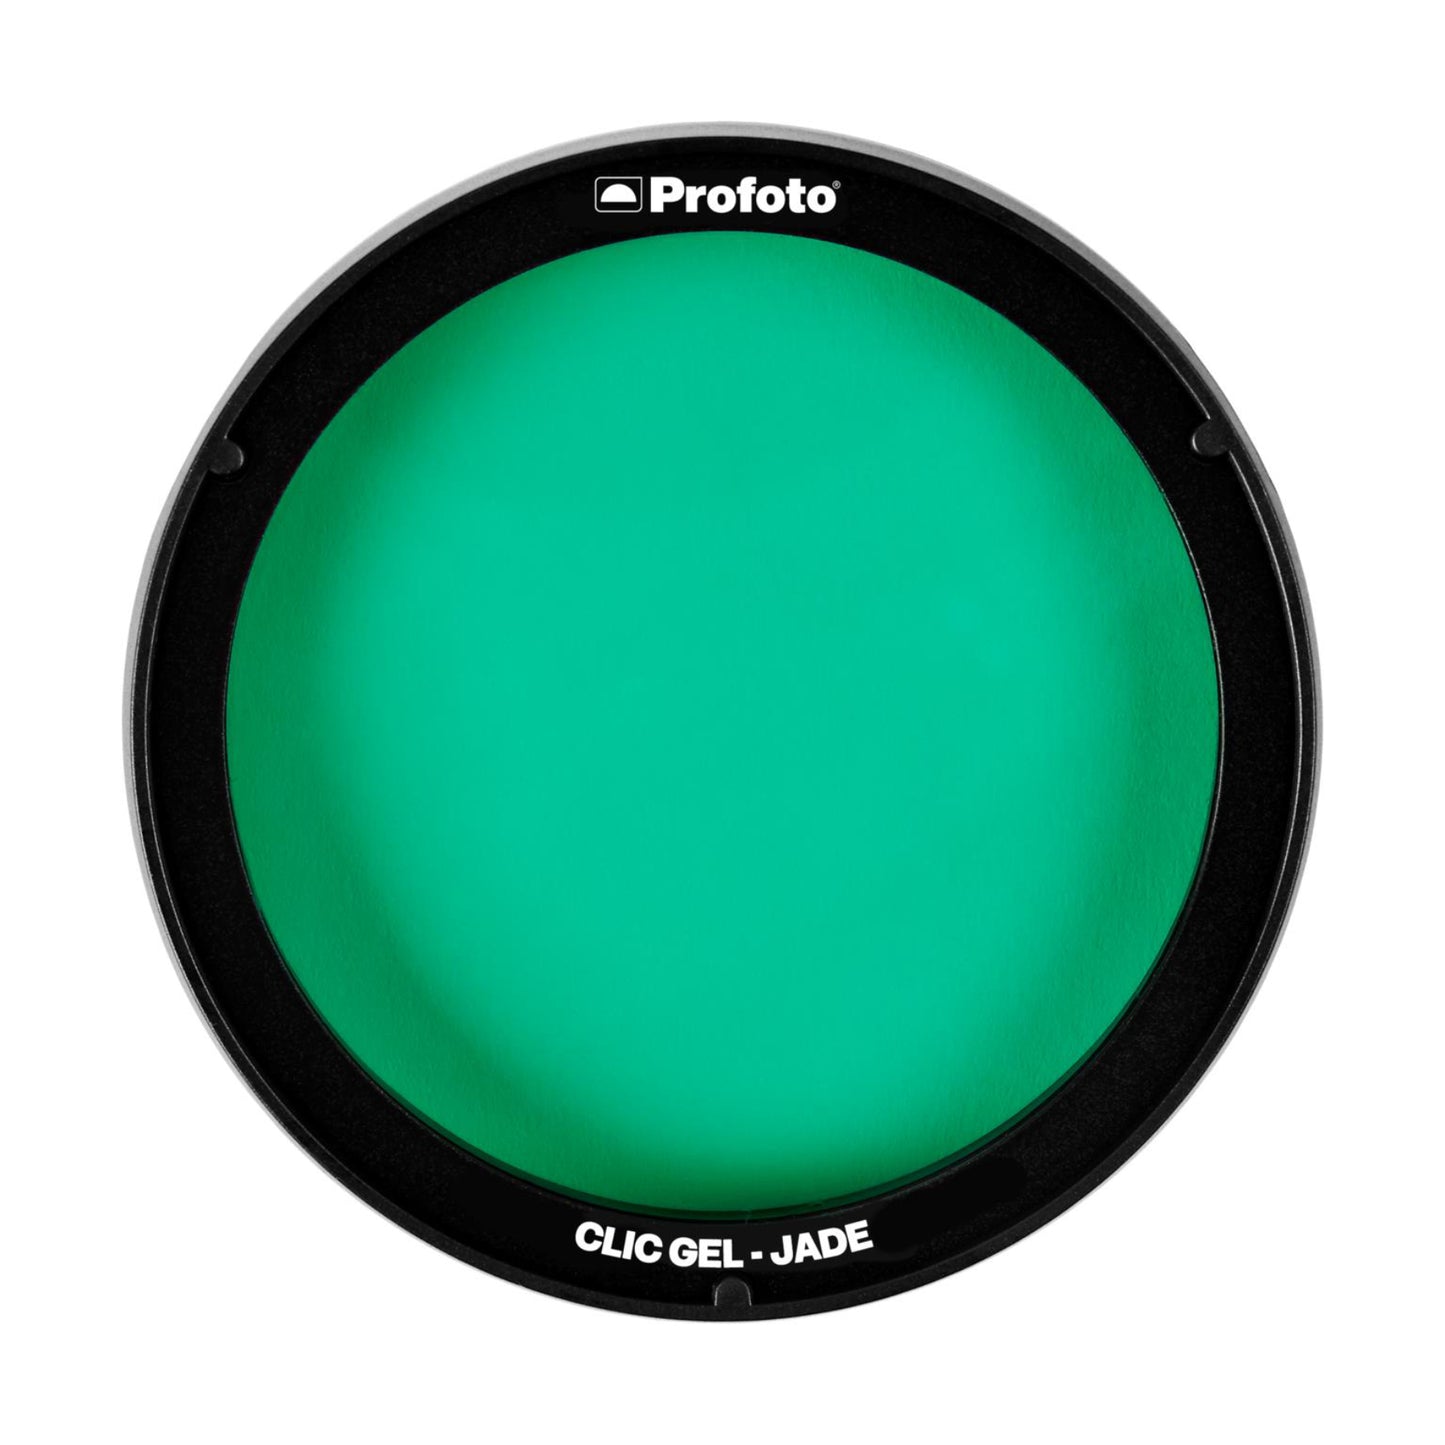 Hire Profoto Clic Gel for A10 Flash - Jade at Topic Rentals